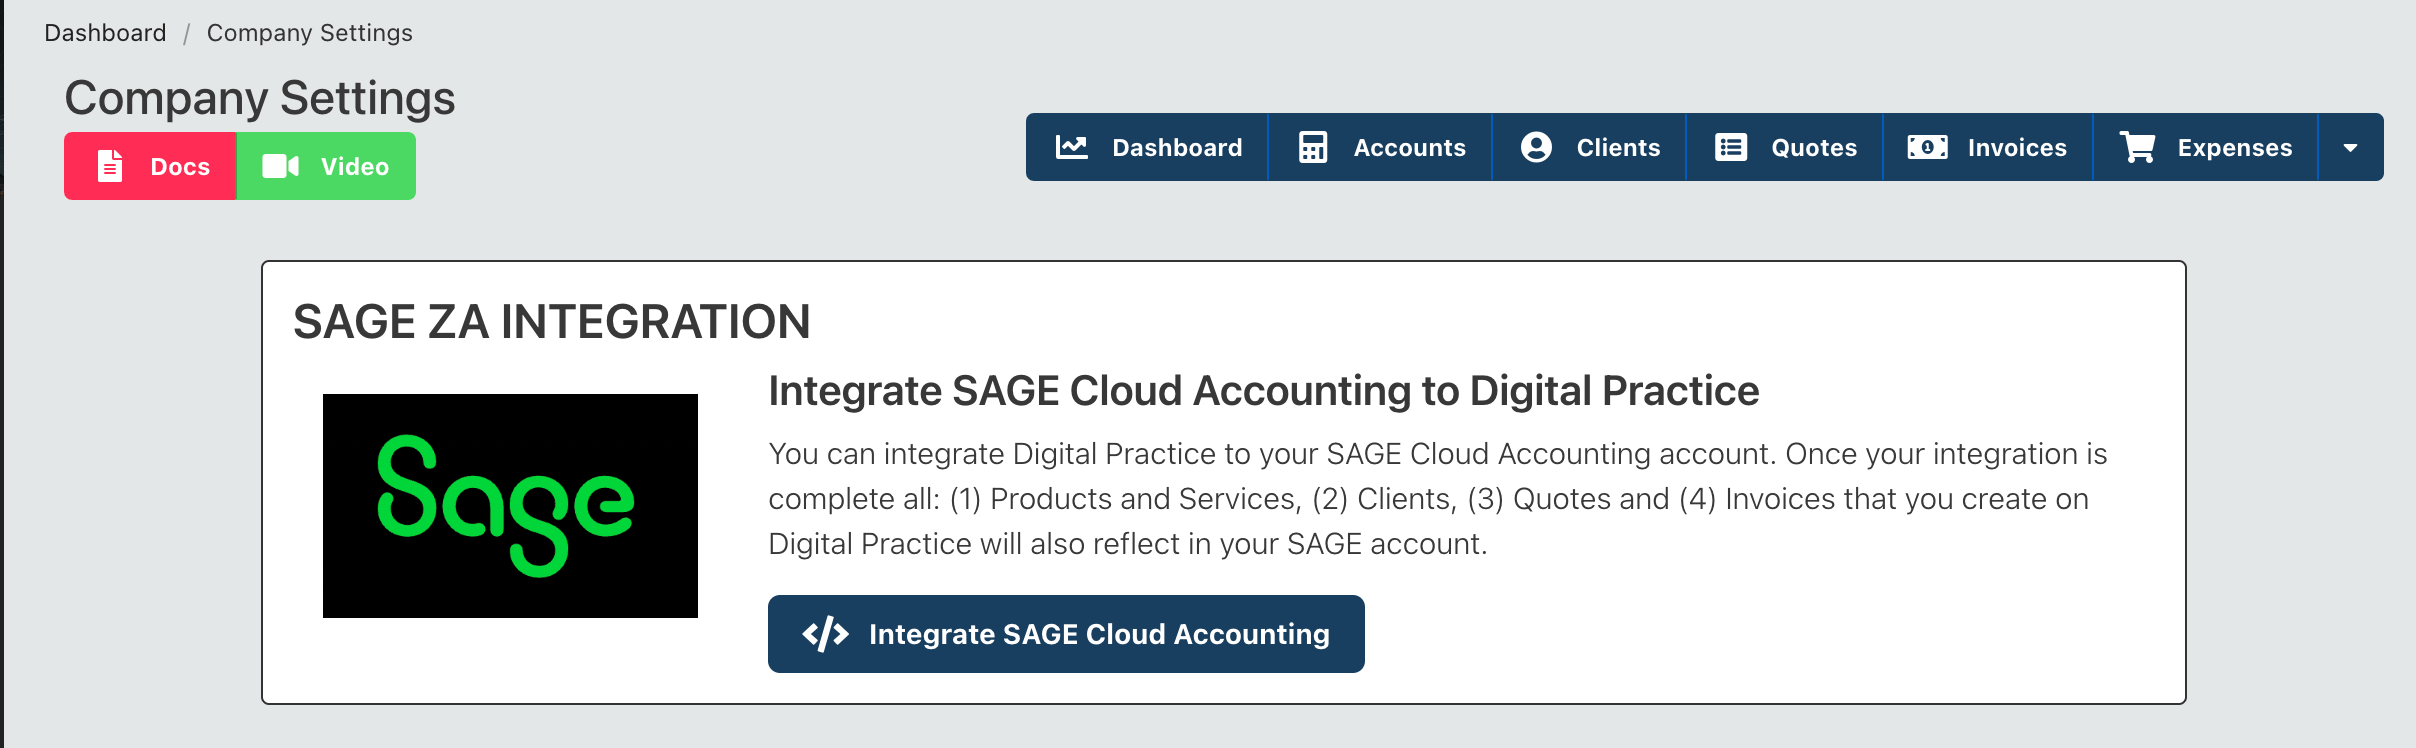 Get started with SAGE integration